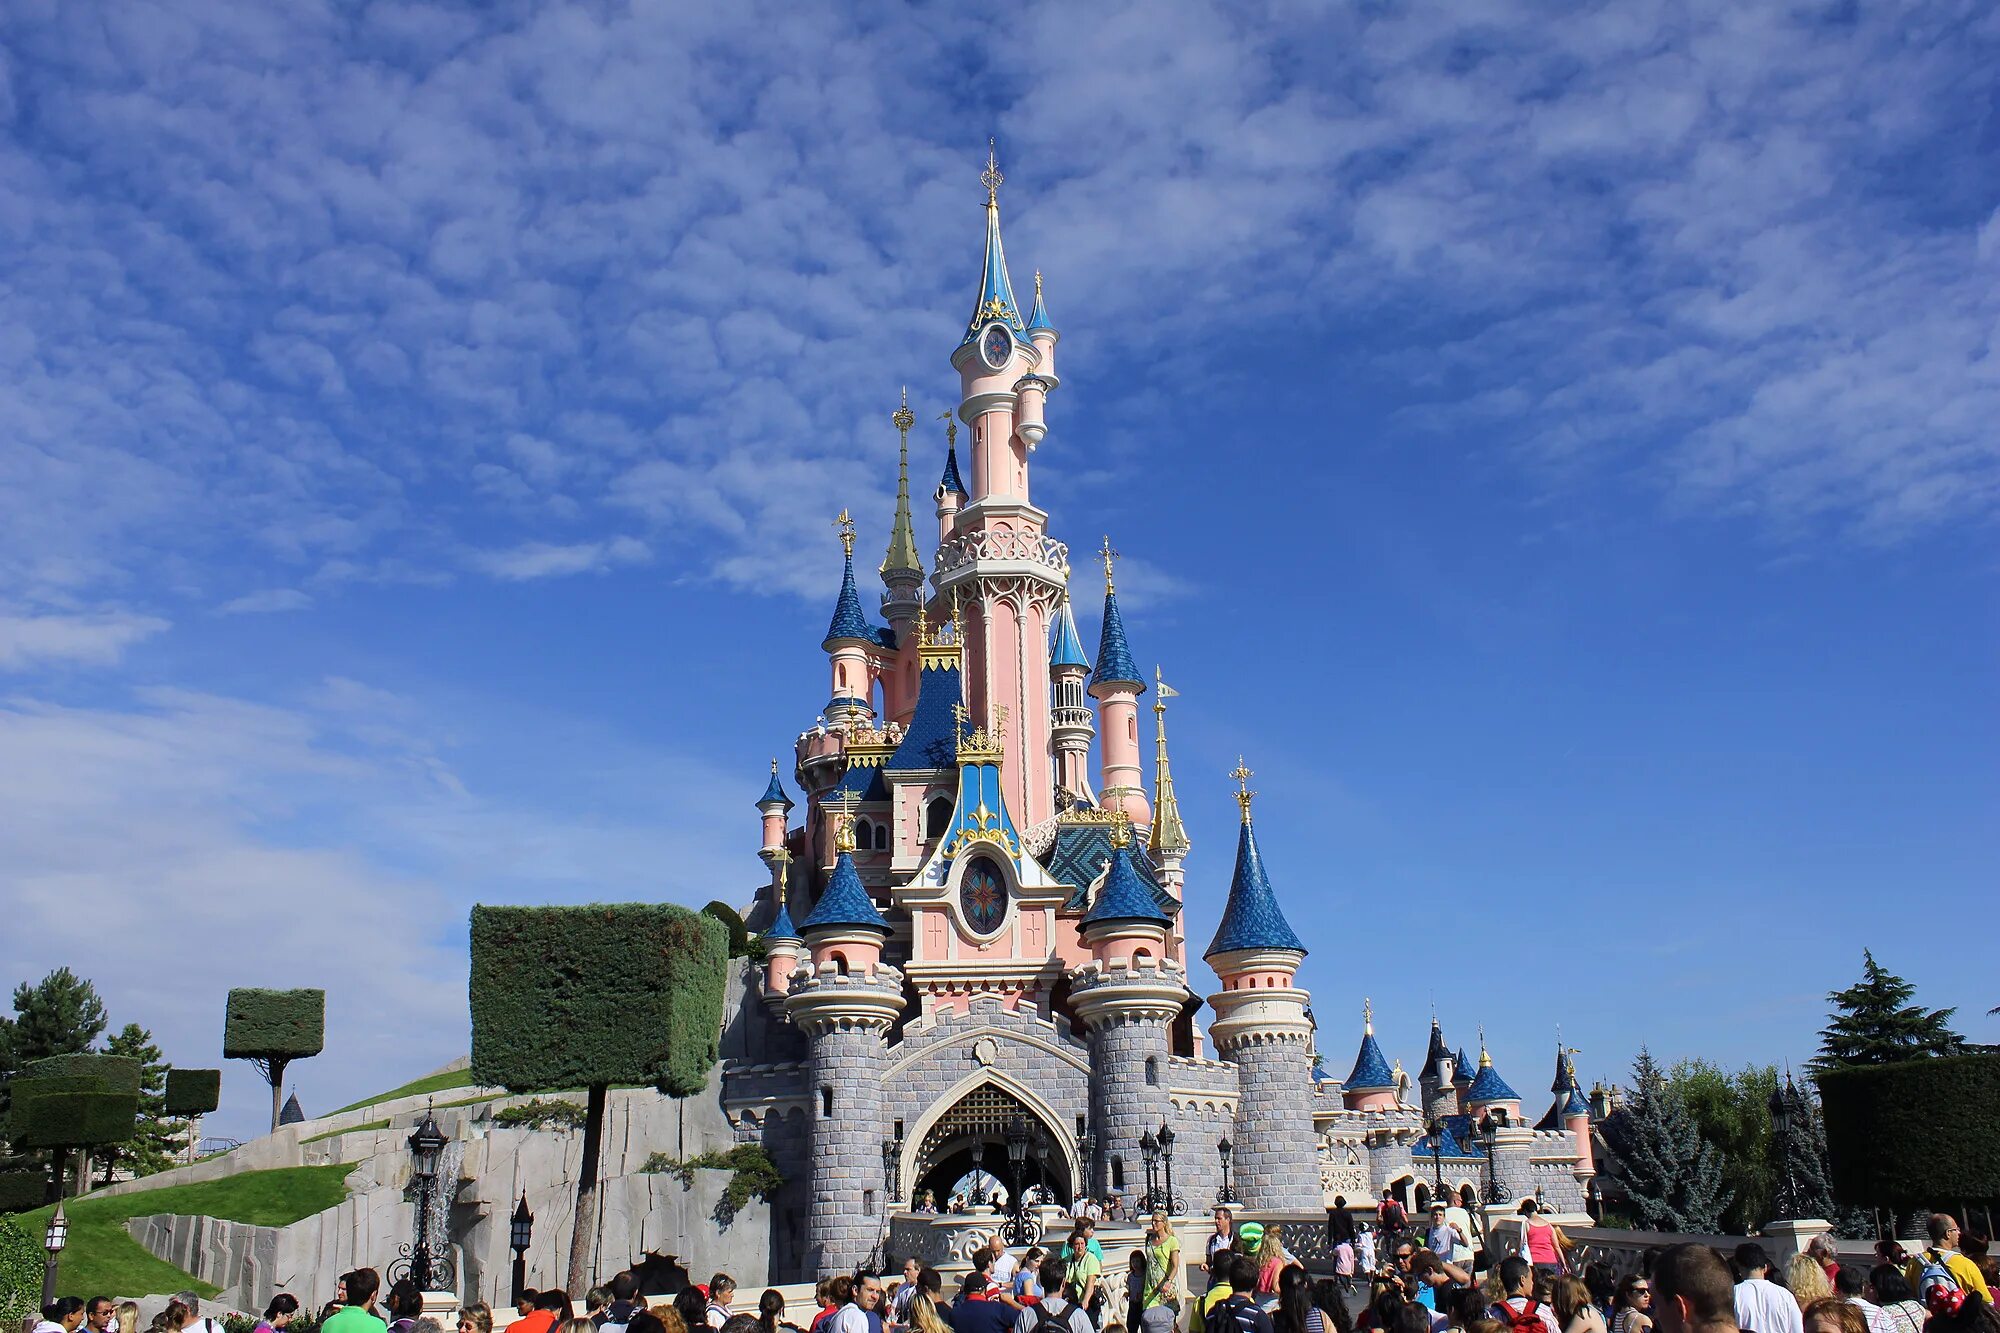 Диснейленд Париж Disneyland Paris. Парижский Диснейленд замок спящей красавицы. Парк Уолт Дисней в Париже. Диснейленд Париж Диснейленд парк. Дисней диснейленд